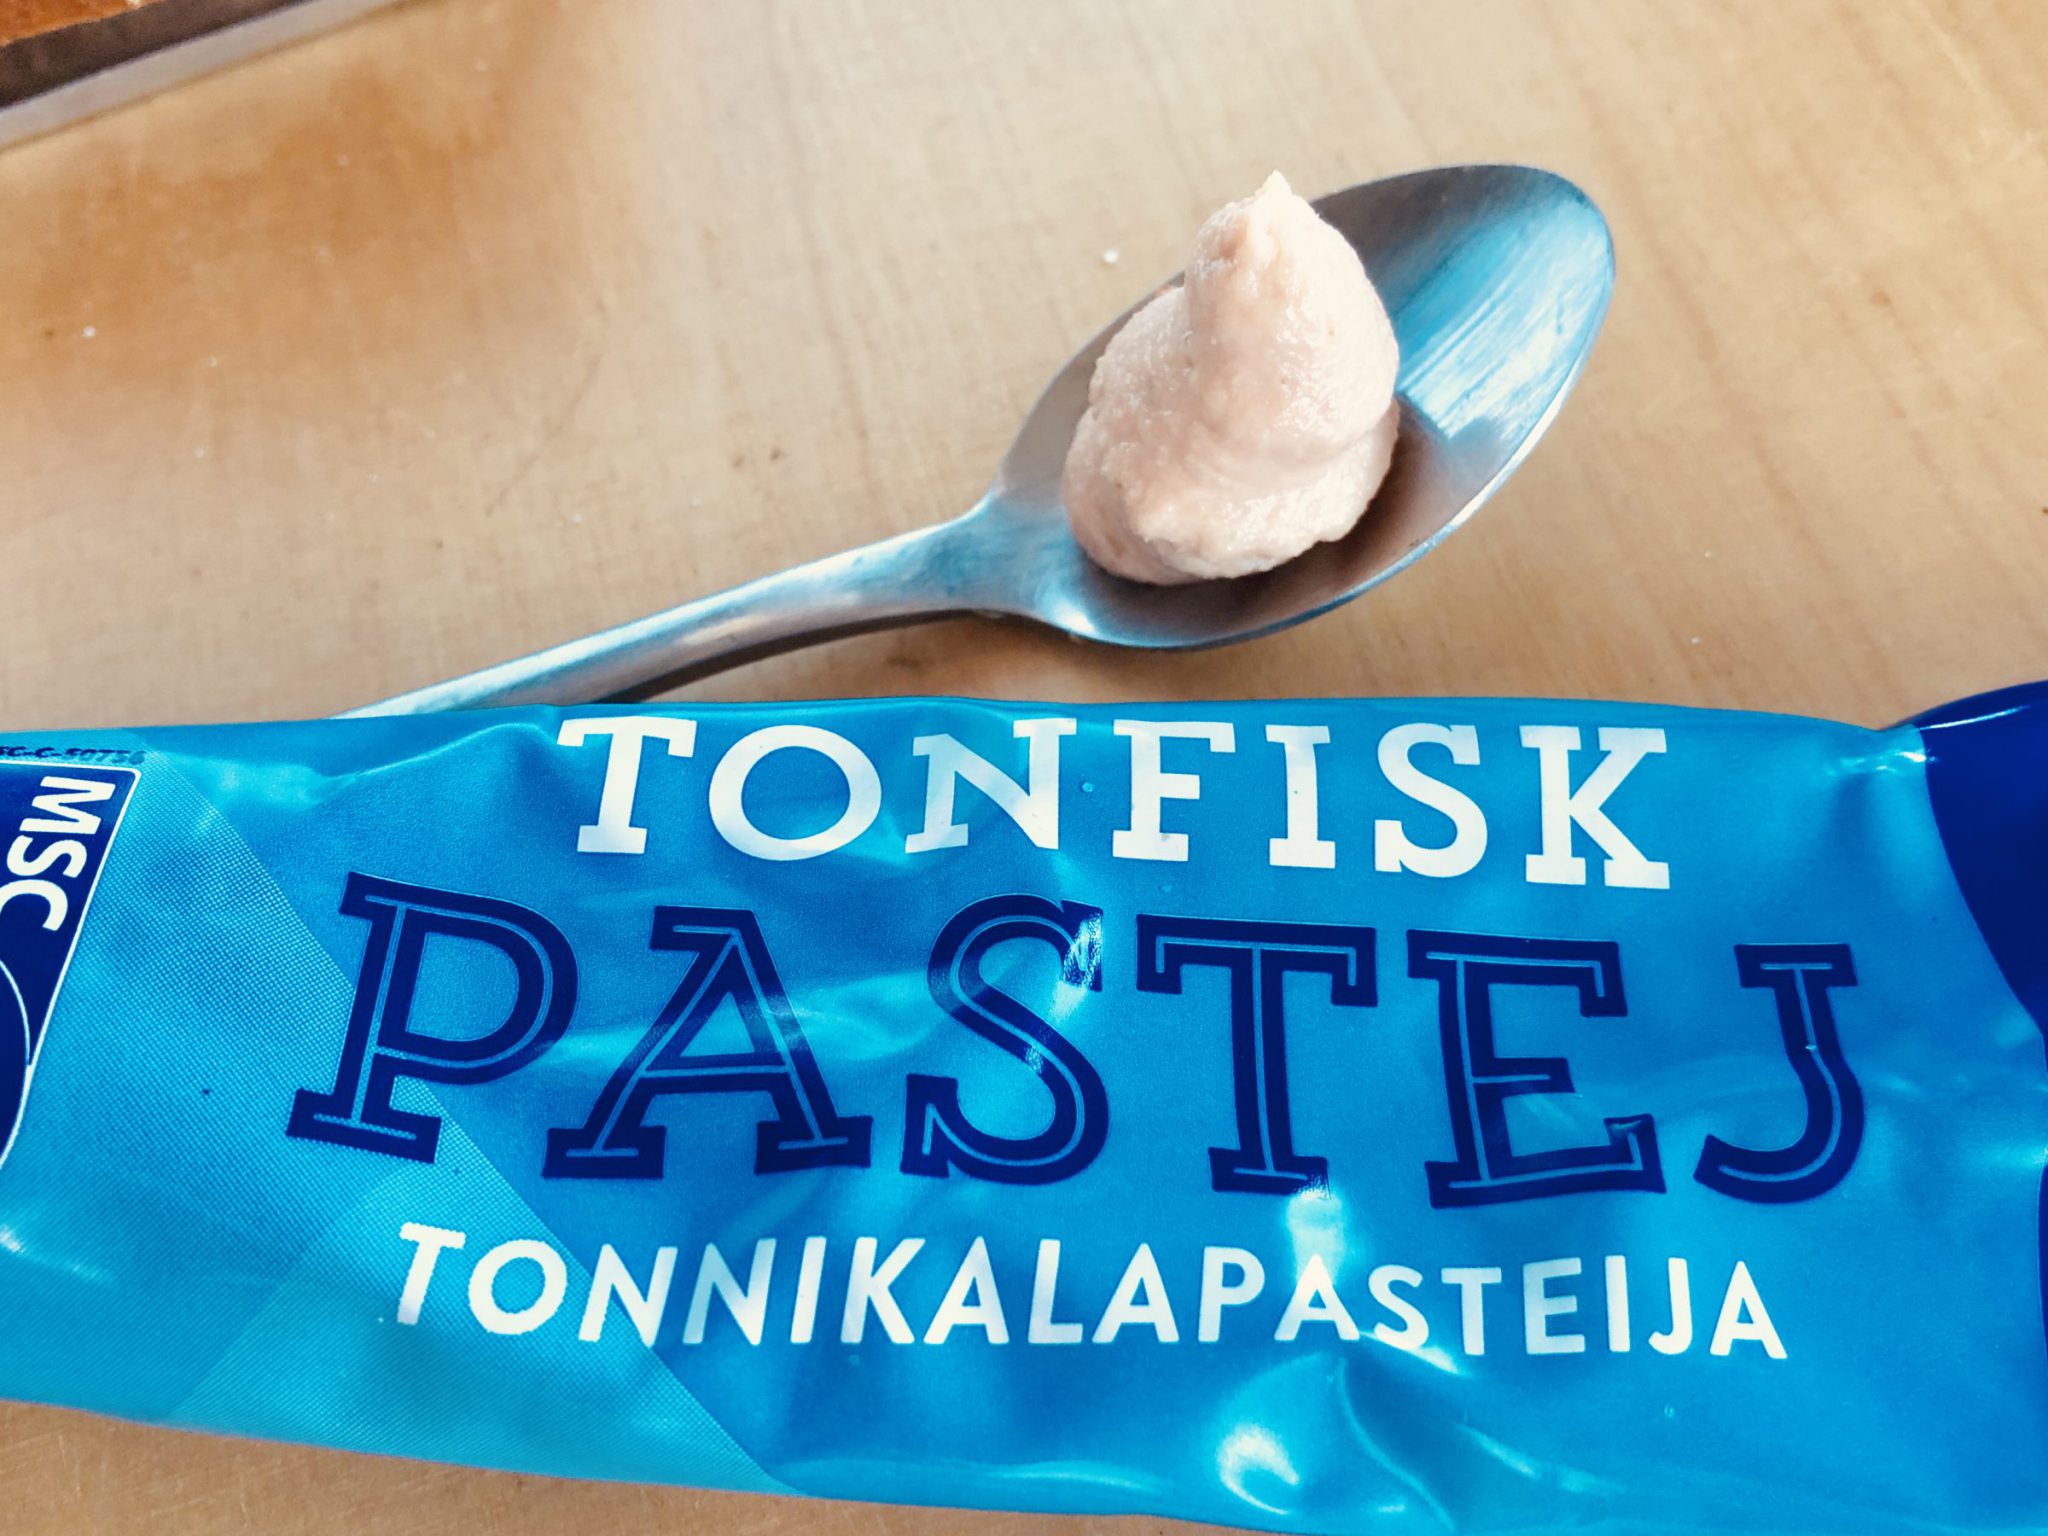 Tonfisk Pastej Tube mit Thunfischpaste in Estland in allen Supermärkten erhältlich